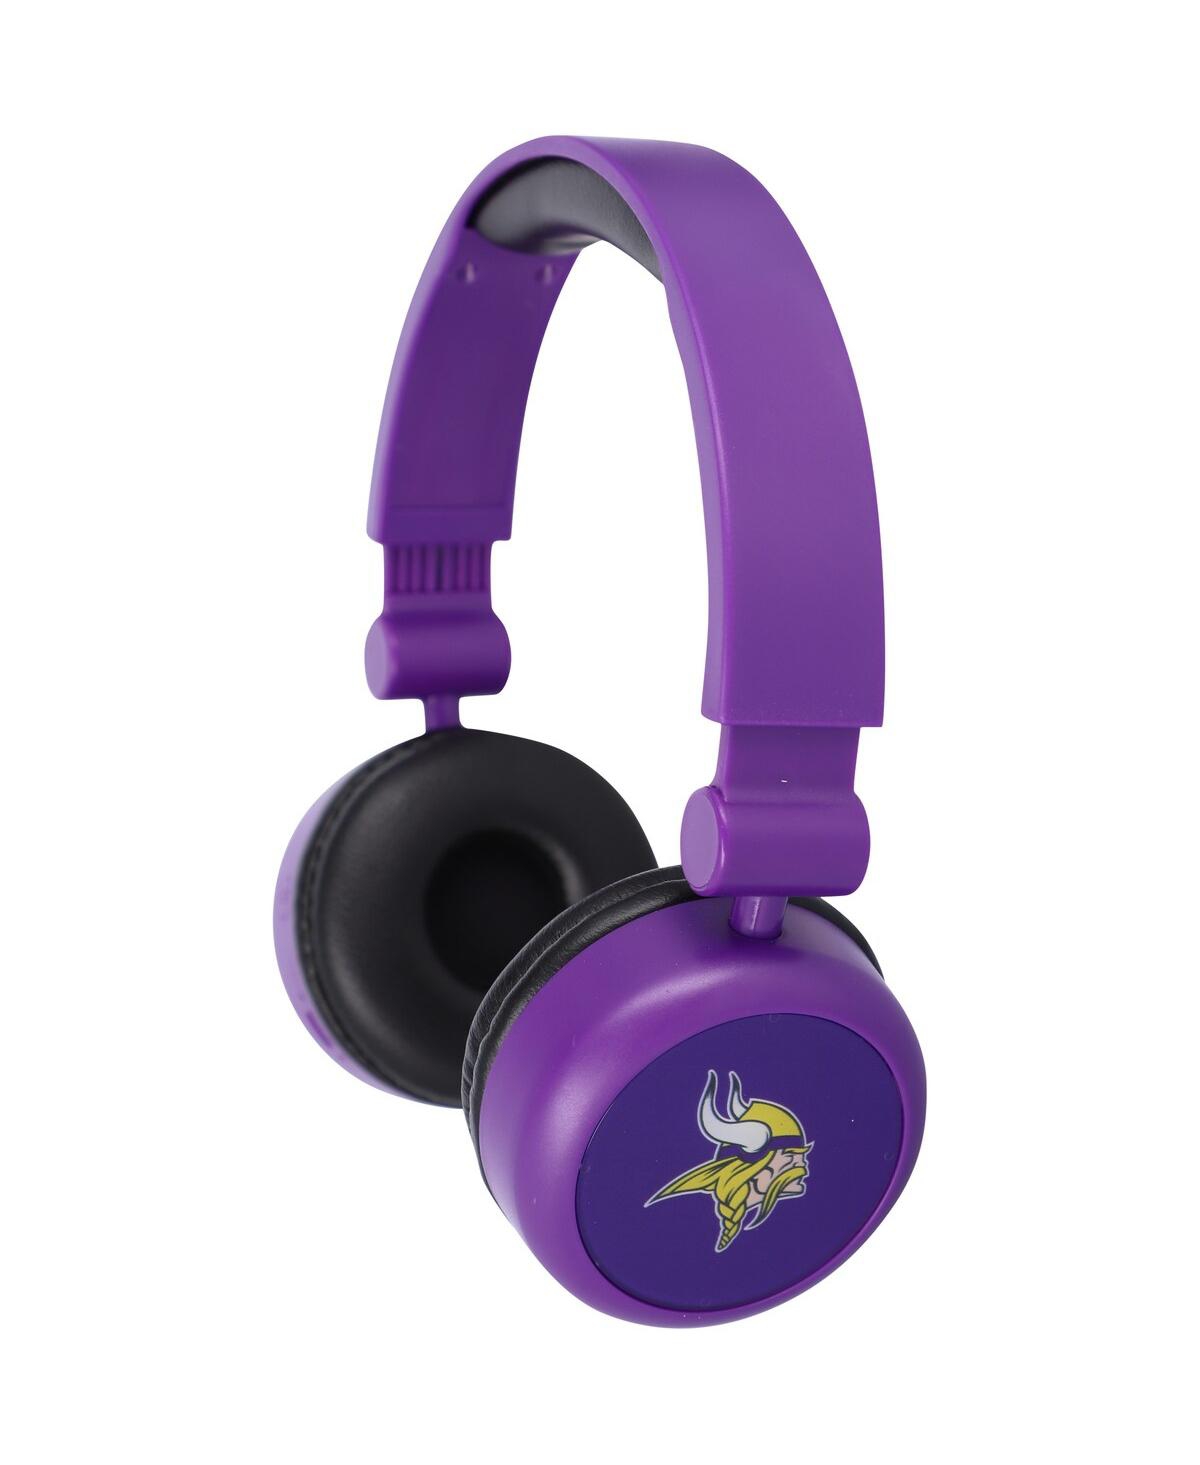 Prime Brands Minnesota Vikings Team Wireless Headphones In Purple